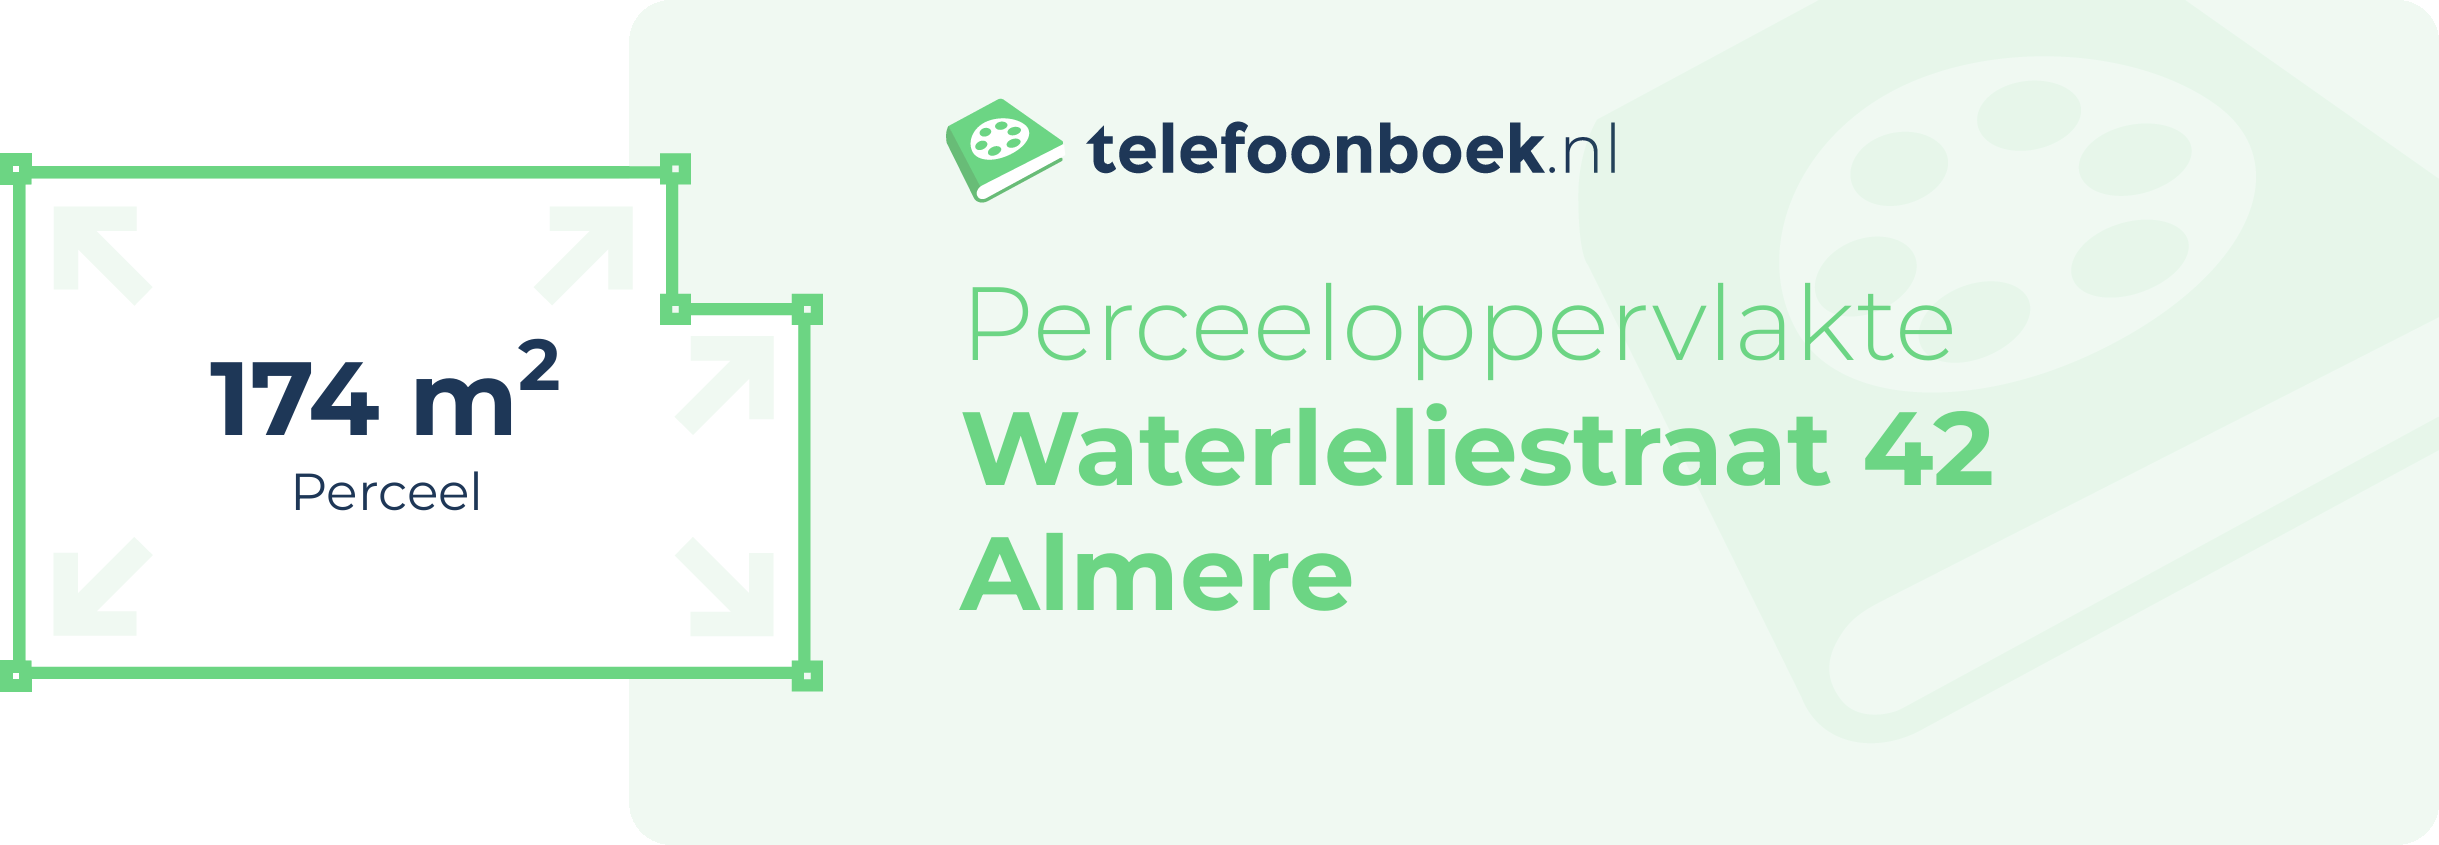 Perceeloppervlakte Waterleliestraat 42 Almere